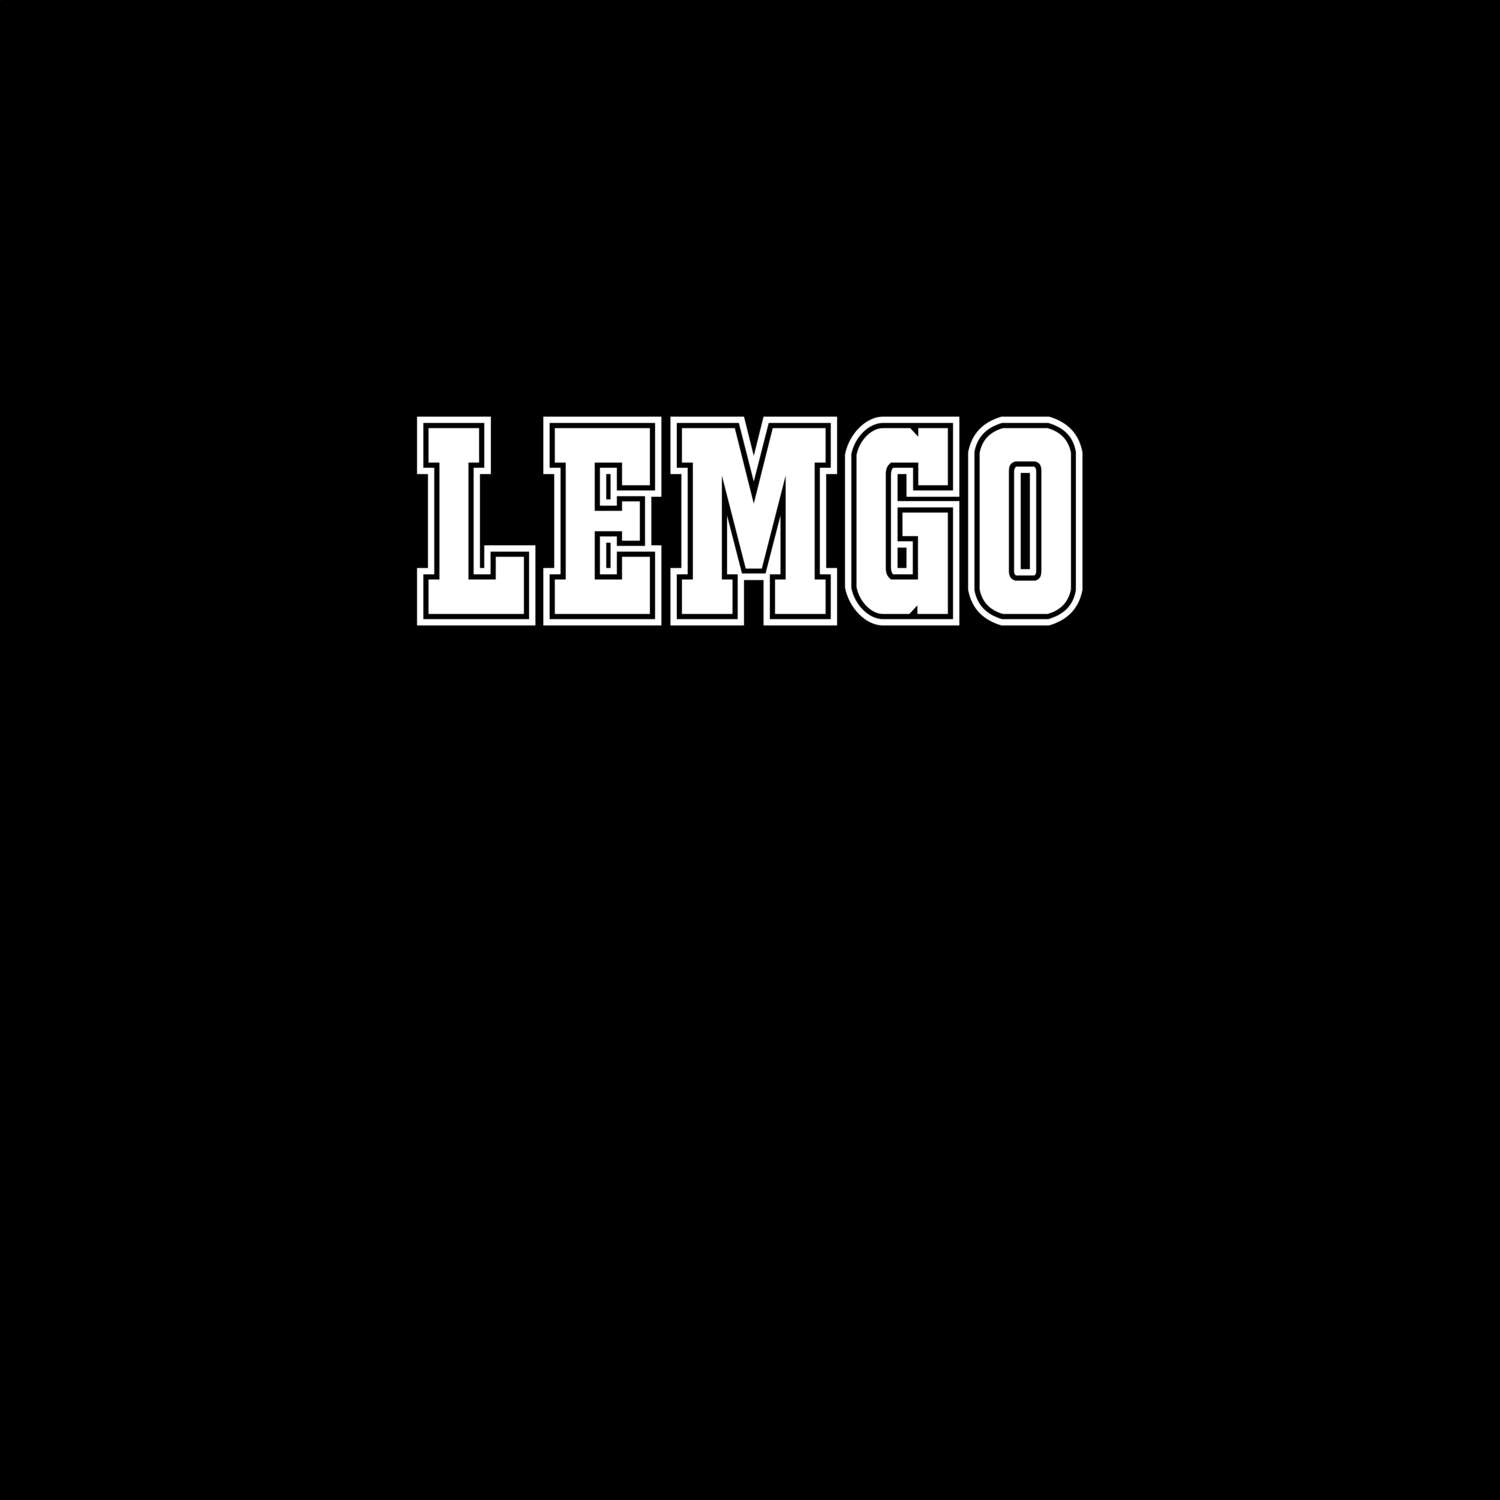 Lemgo T-Shirt »Classic«